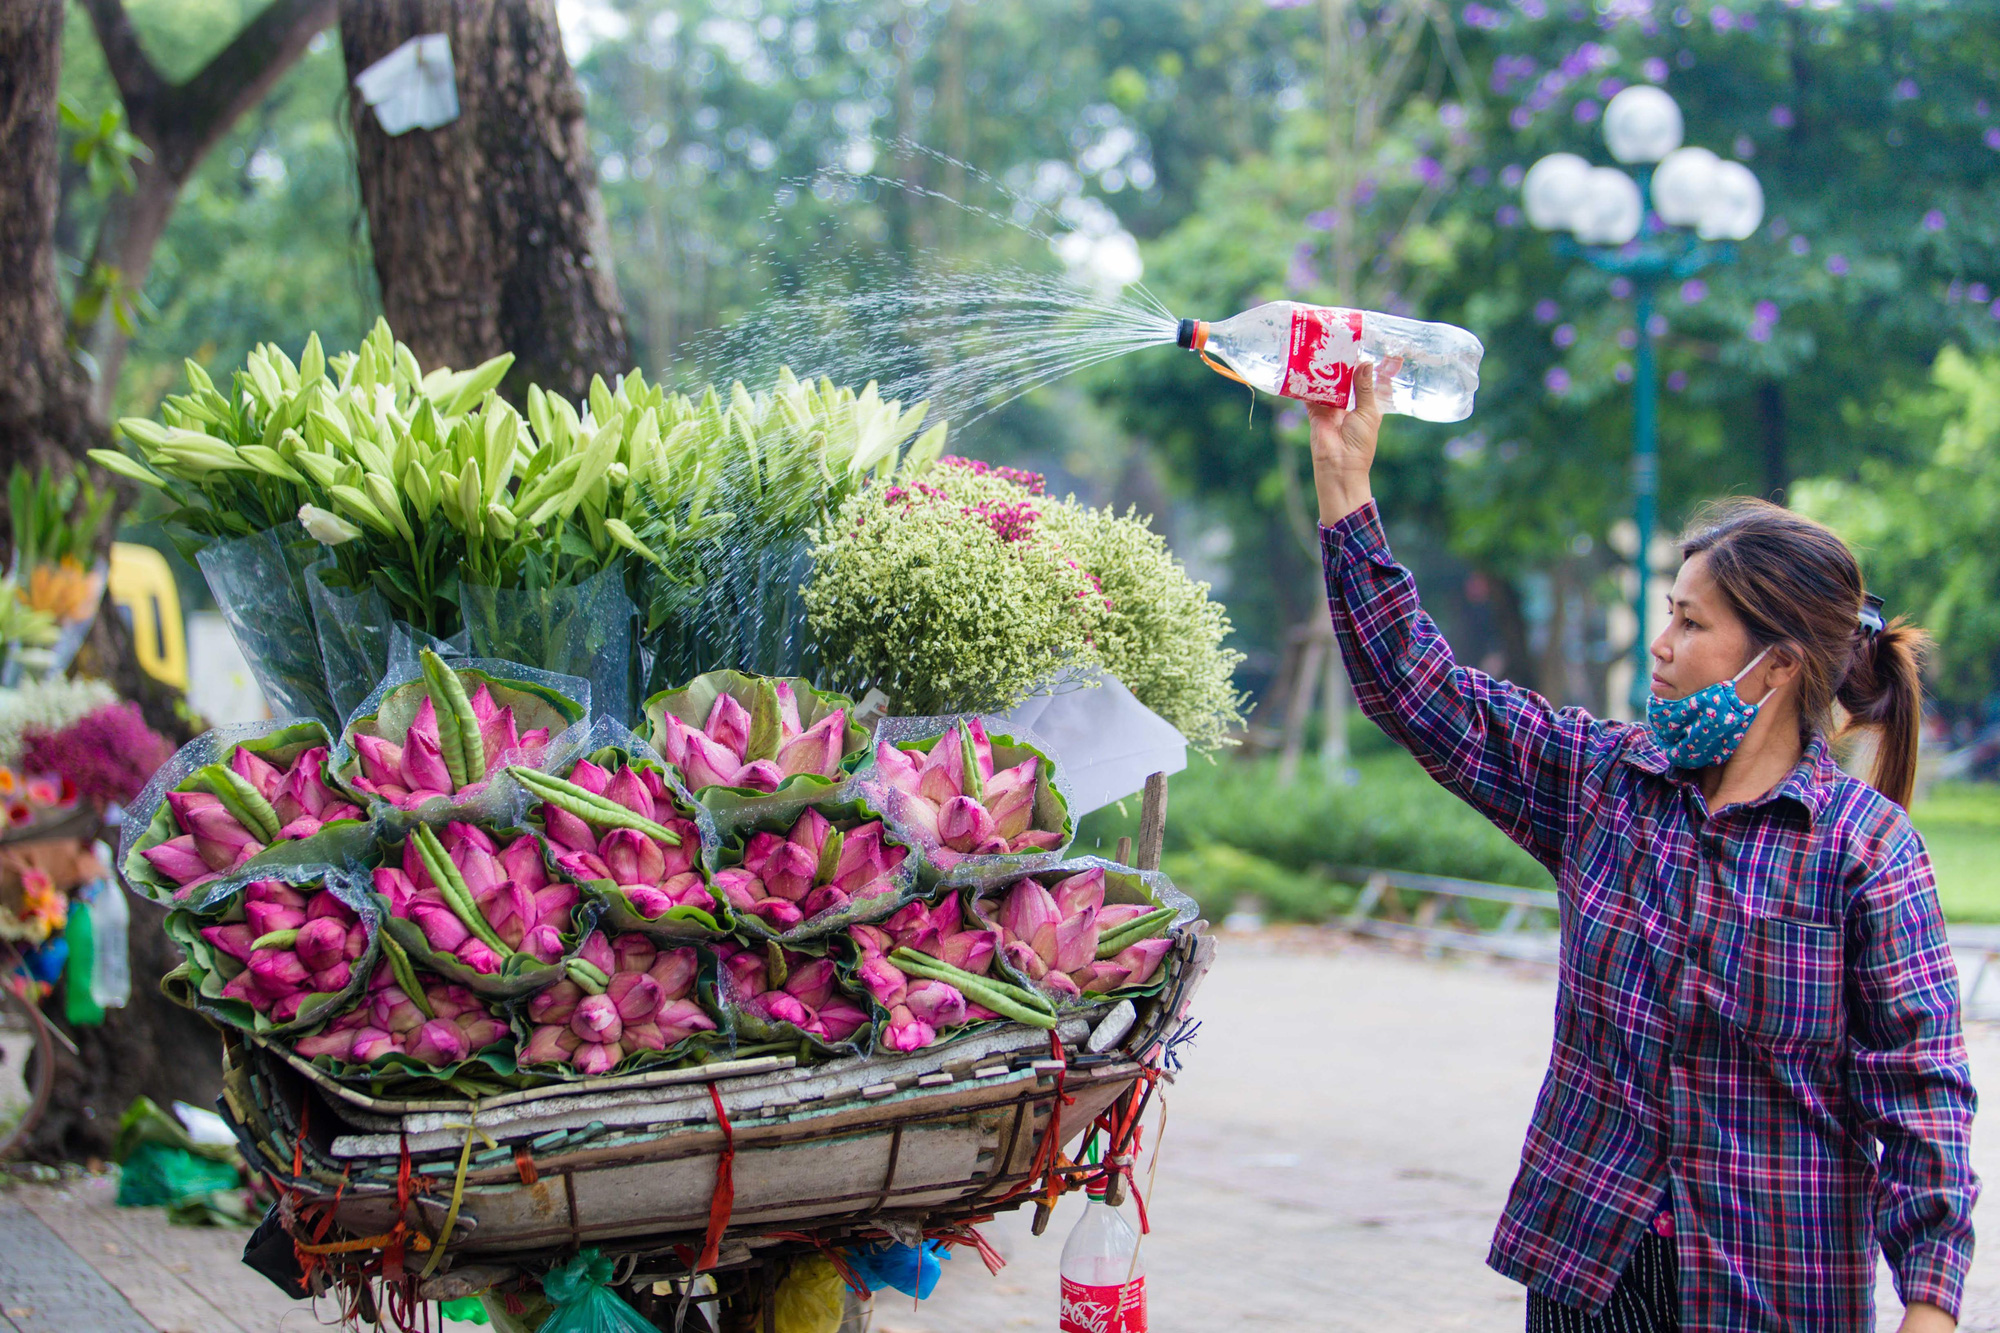 Hoa sen TPHCM có thể là một trong những địa danh nổi tiếng nhất của thành phố, với vẻ đẹp thơ mộng và nghệ thuật của chúng. Những chiếc ảnh về hoa sen TPHCM sẽ khiến bạn thấy hạnh phúc và thư giãn khi đến thăm nó.